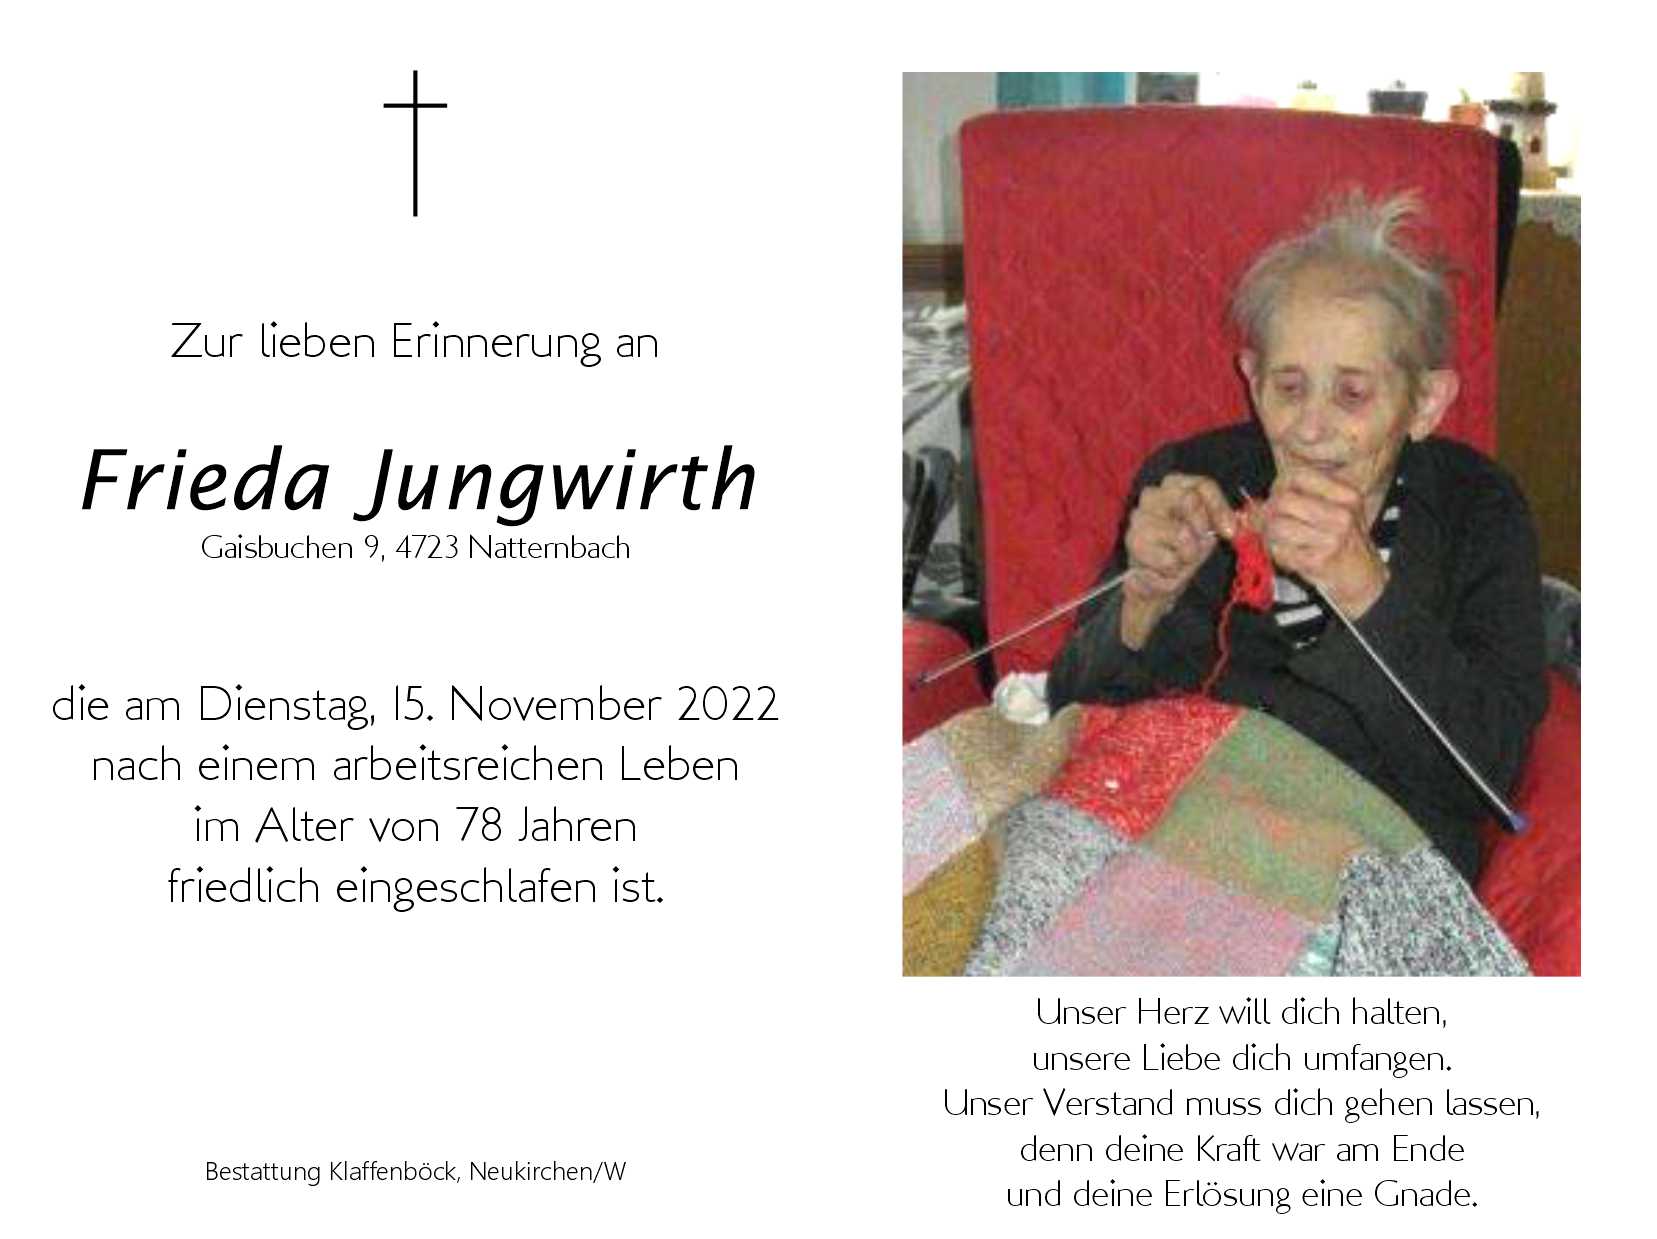 Frieda  Jungwirth